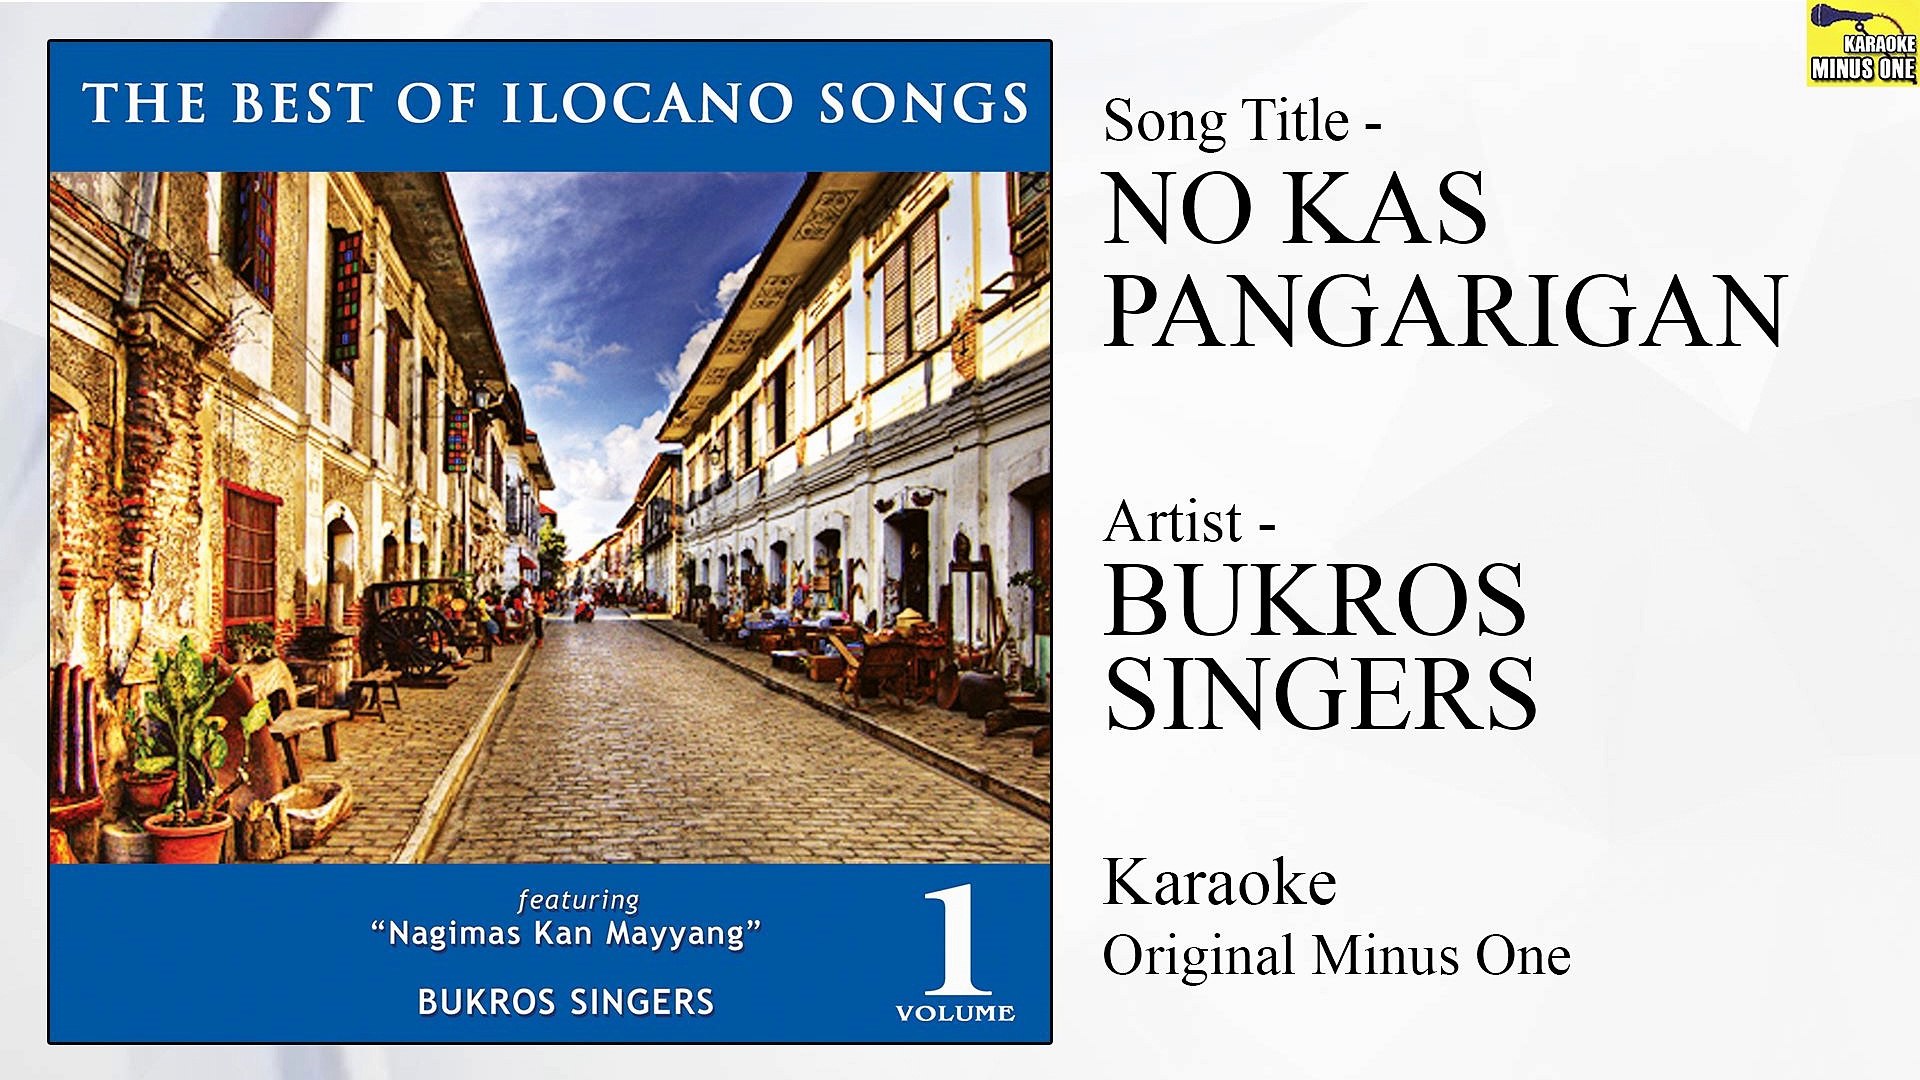 Bukros Singers - No Kas Pangarigan (Original Minus One)